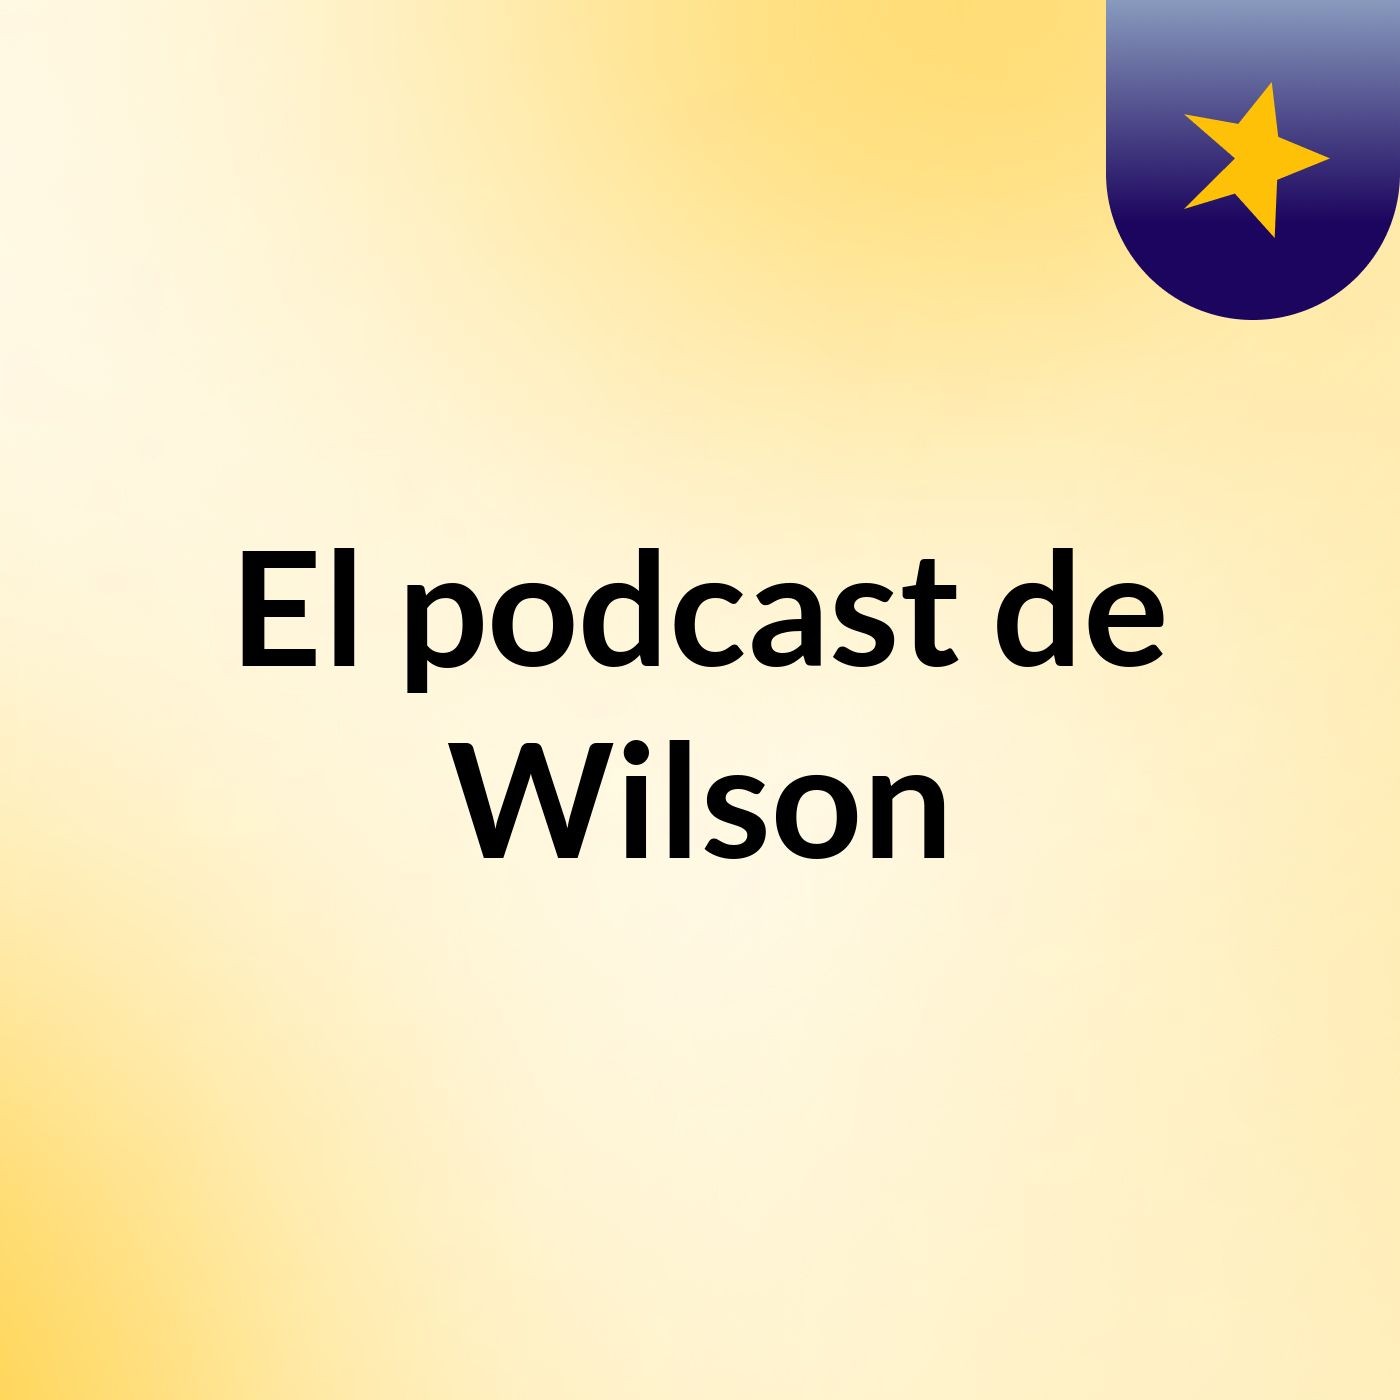 Episodio 5 - El podcast de Wilson